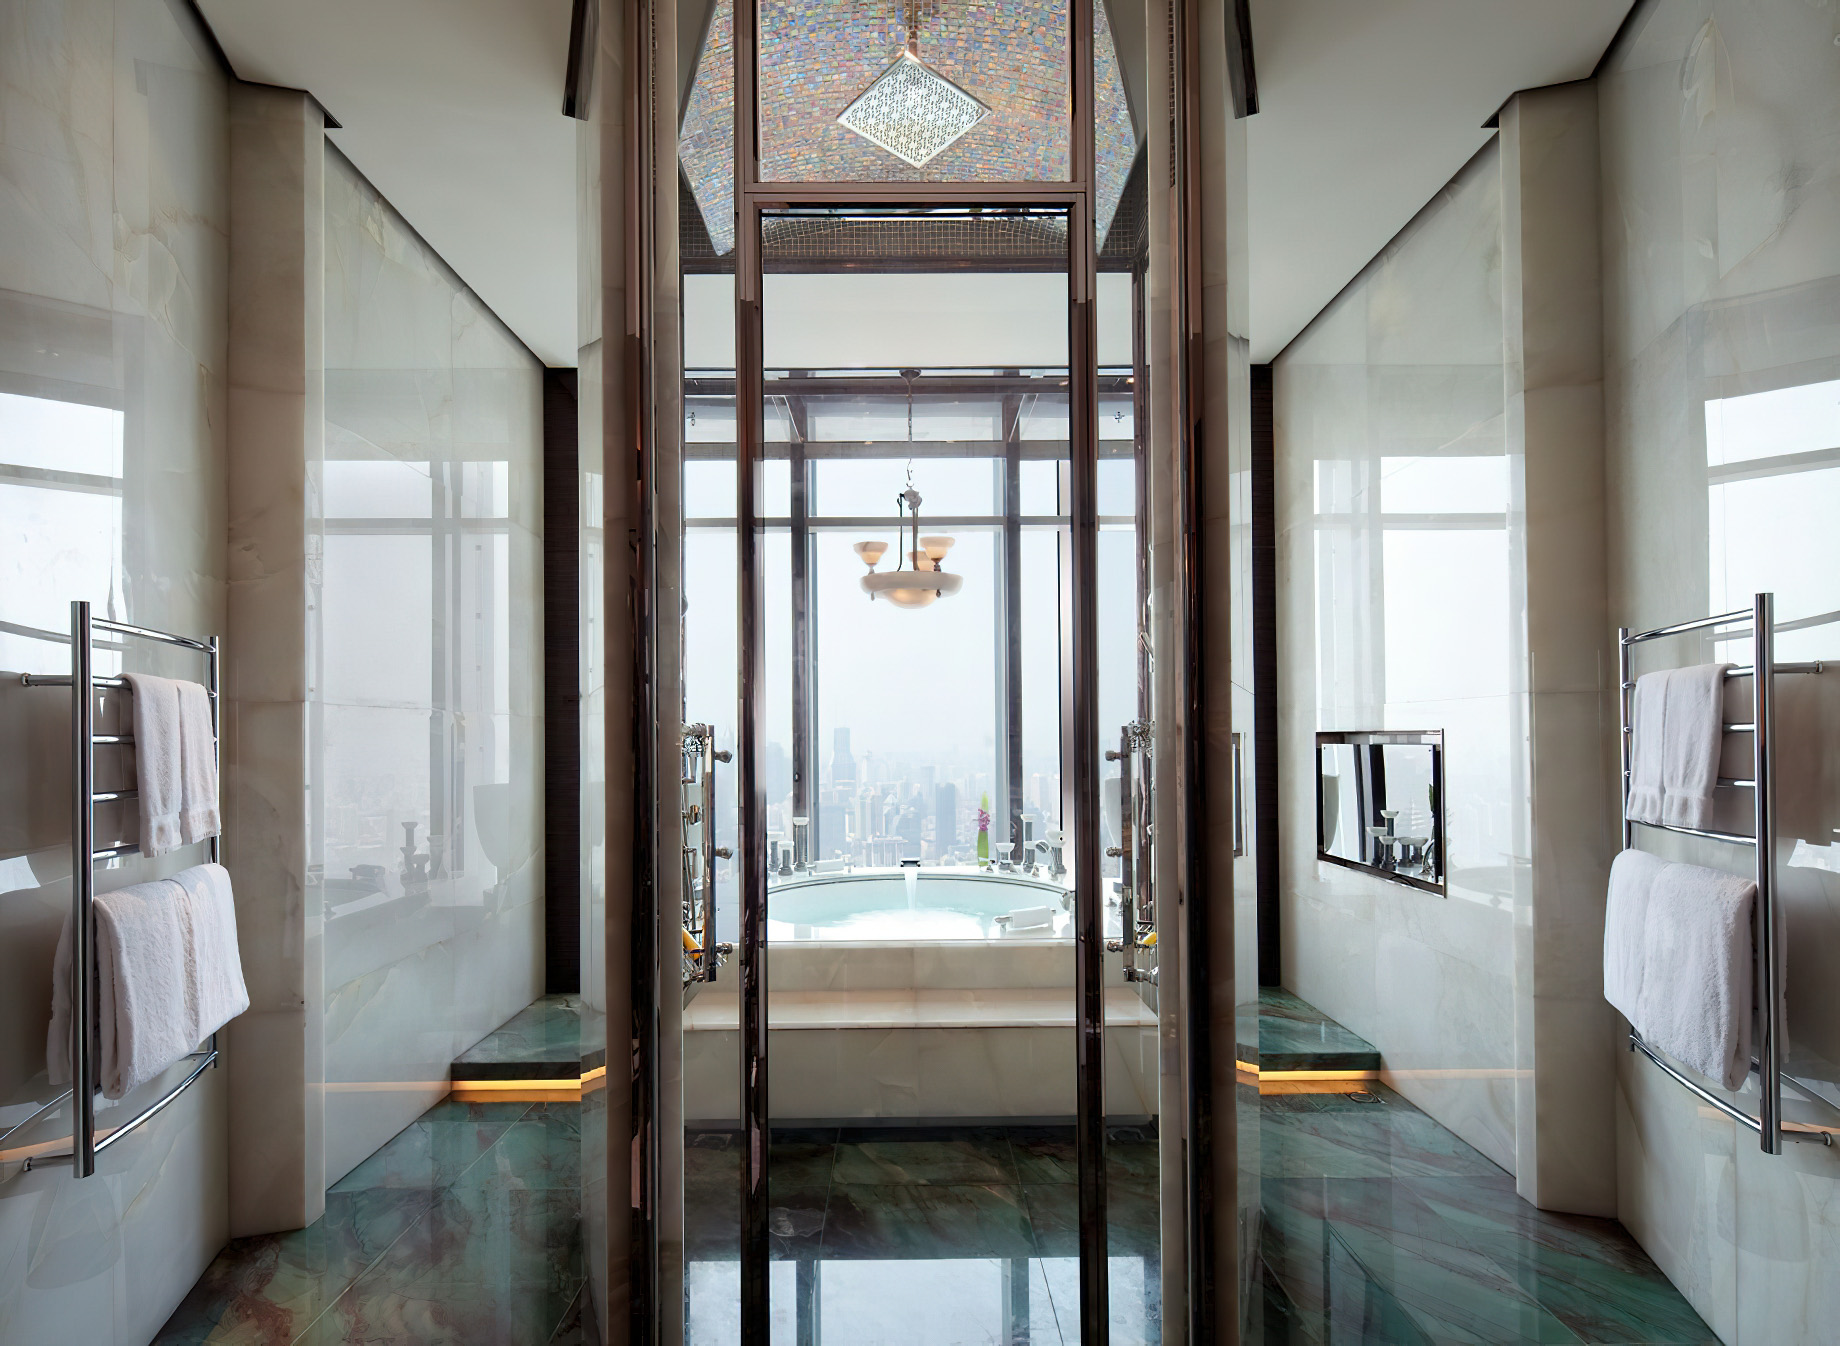 The Ritz-Carlton Shanghai, Pudong Hotel – Shanghai, China – The Ritz-Carlton Suite Bathroom Tub